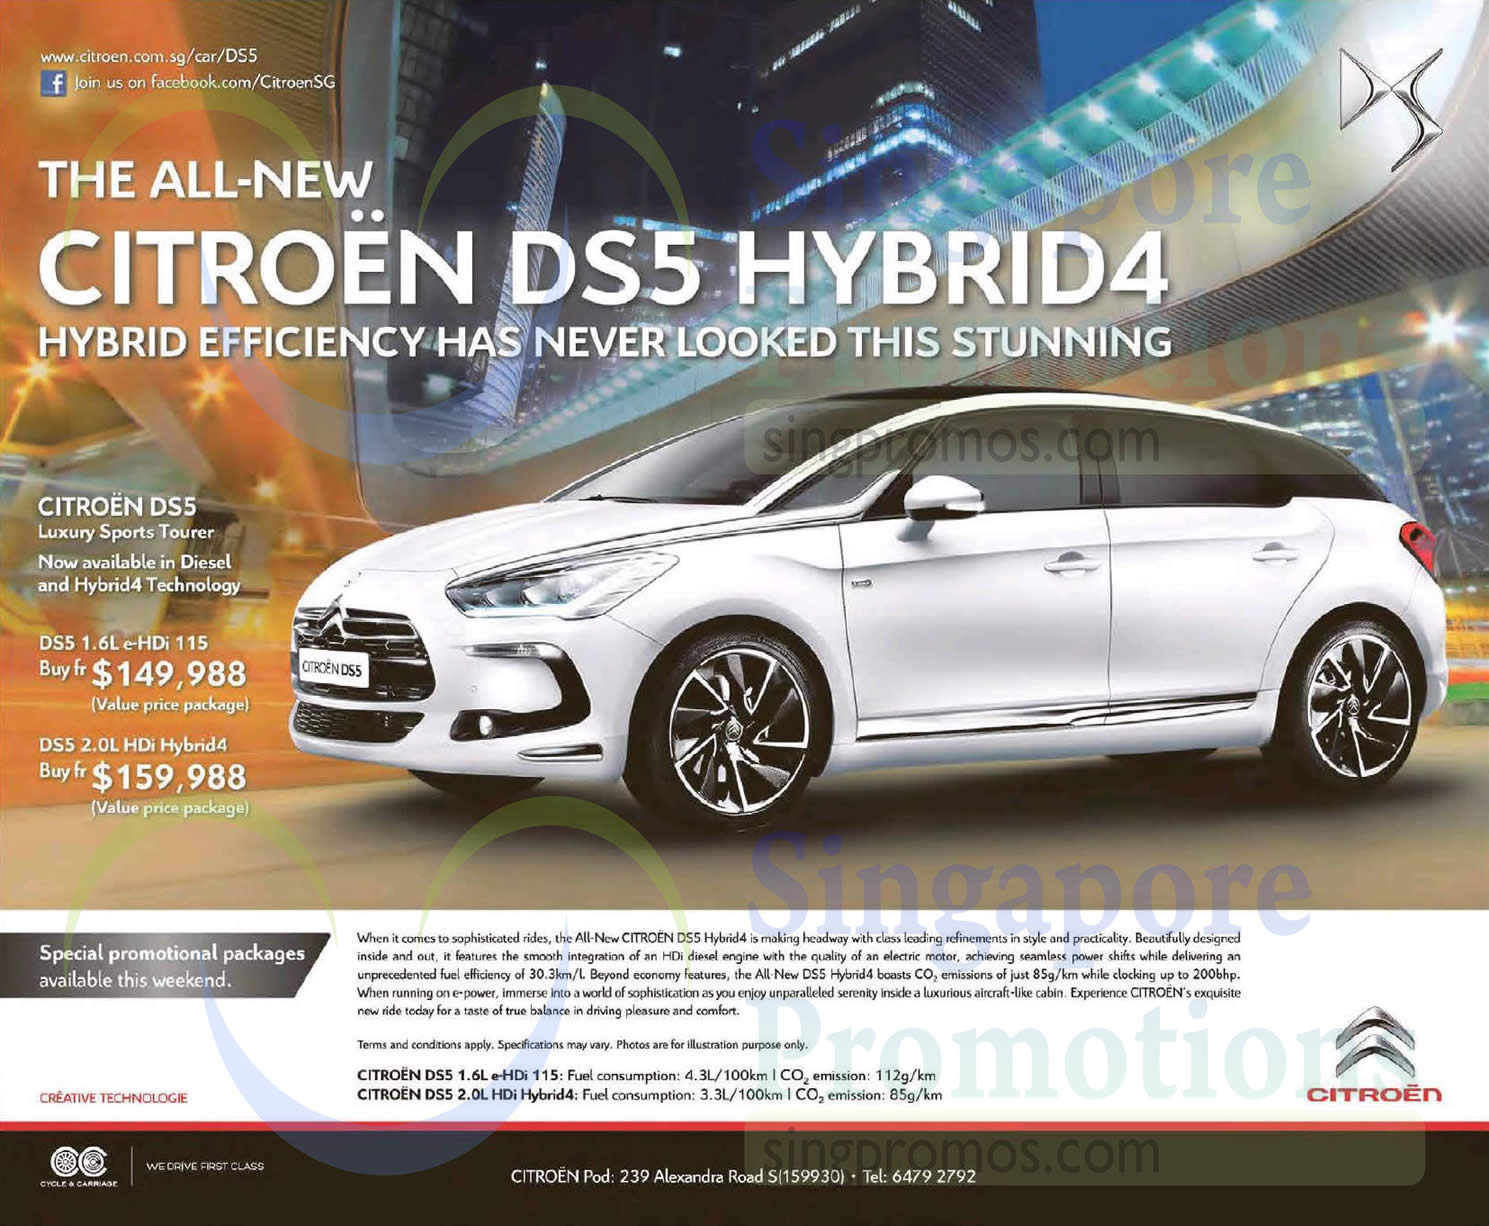 Citroen Ds5 Hybrid4 Offer 18 Apr 15